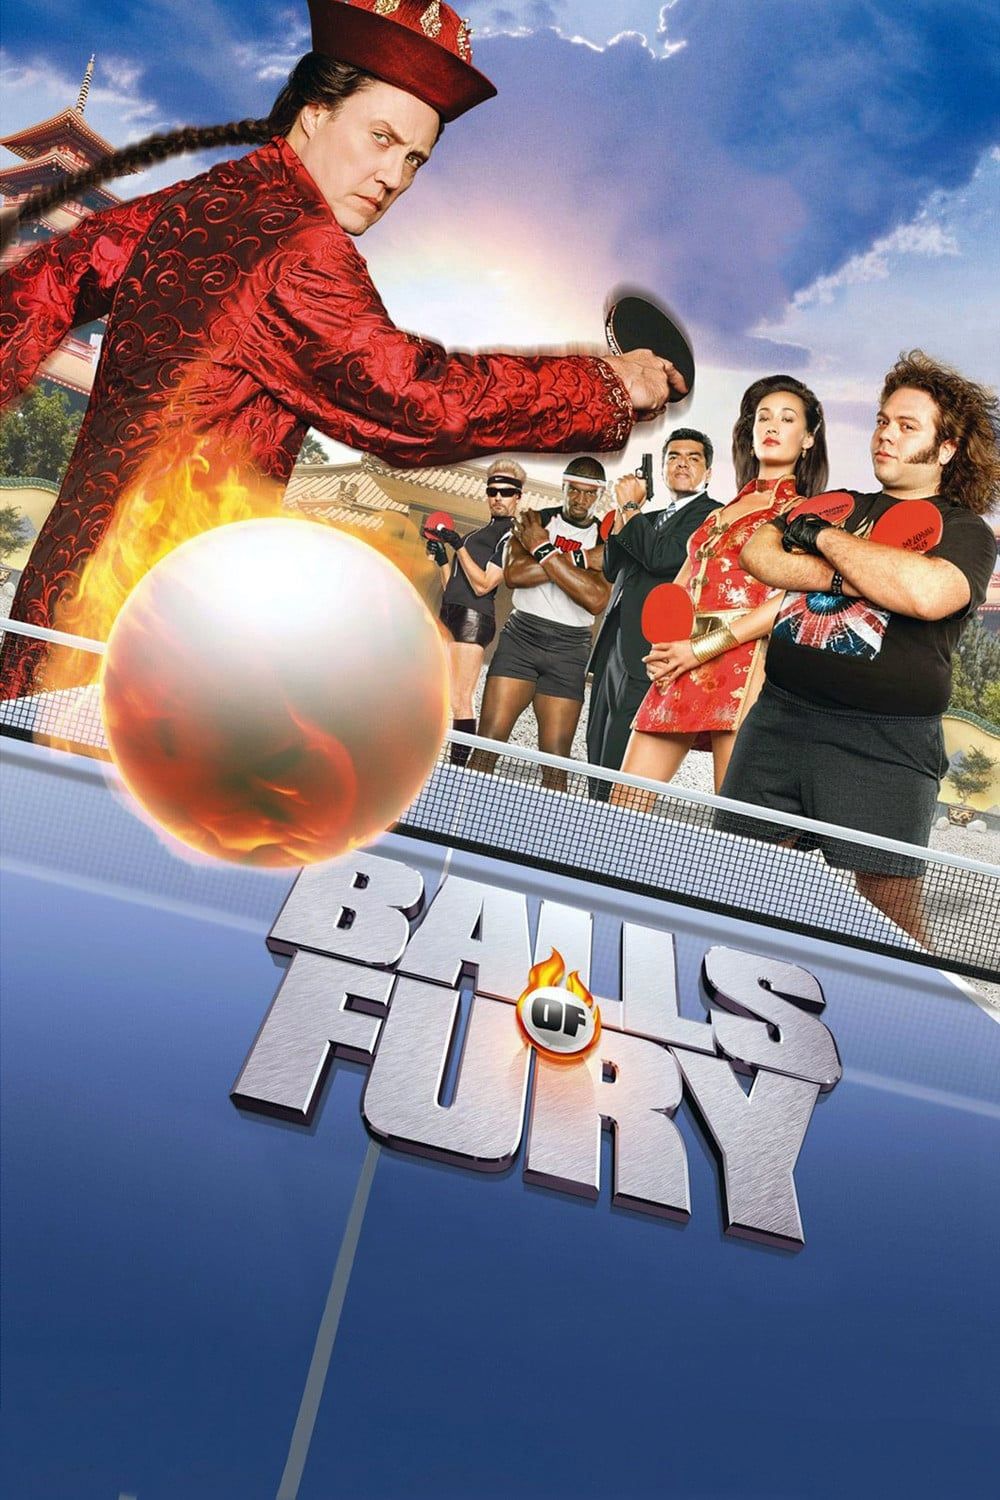 Balls of Fury' fairly fun